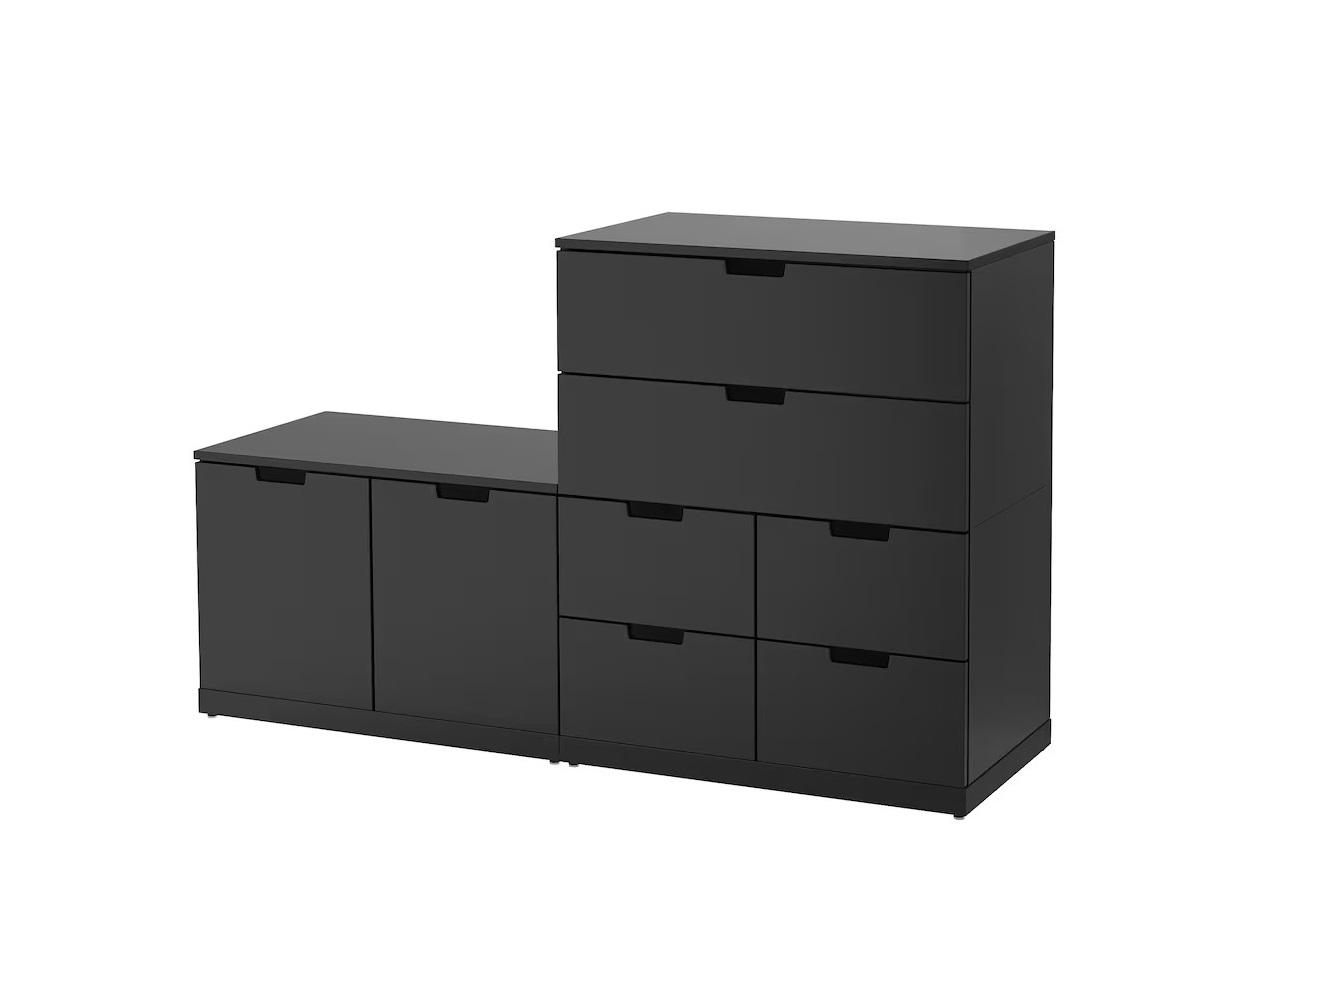 Комод Нордли 39 black ИКЕА (IKEA) изображение товара